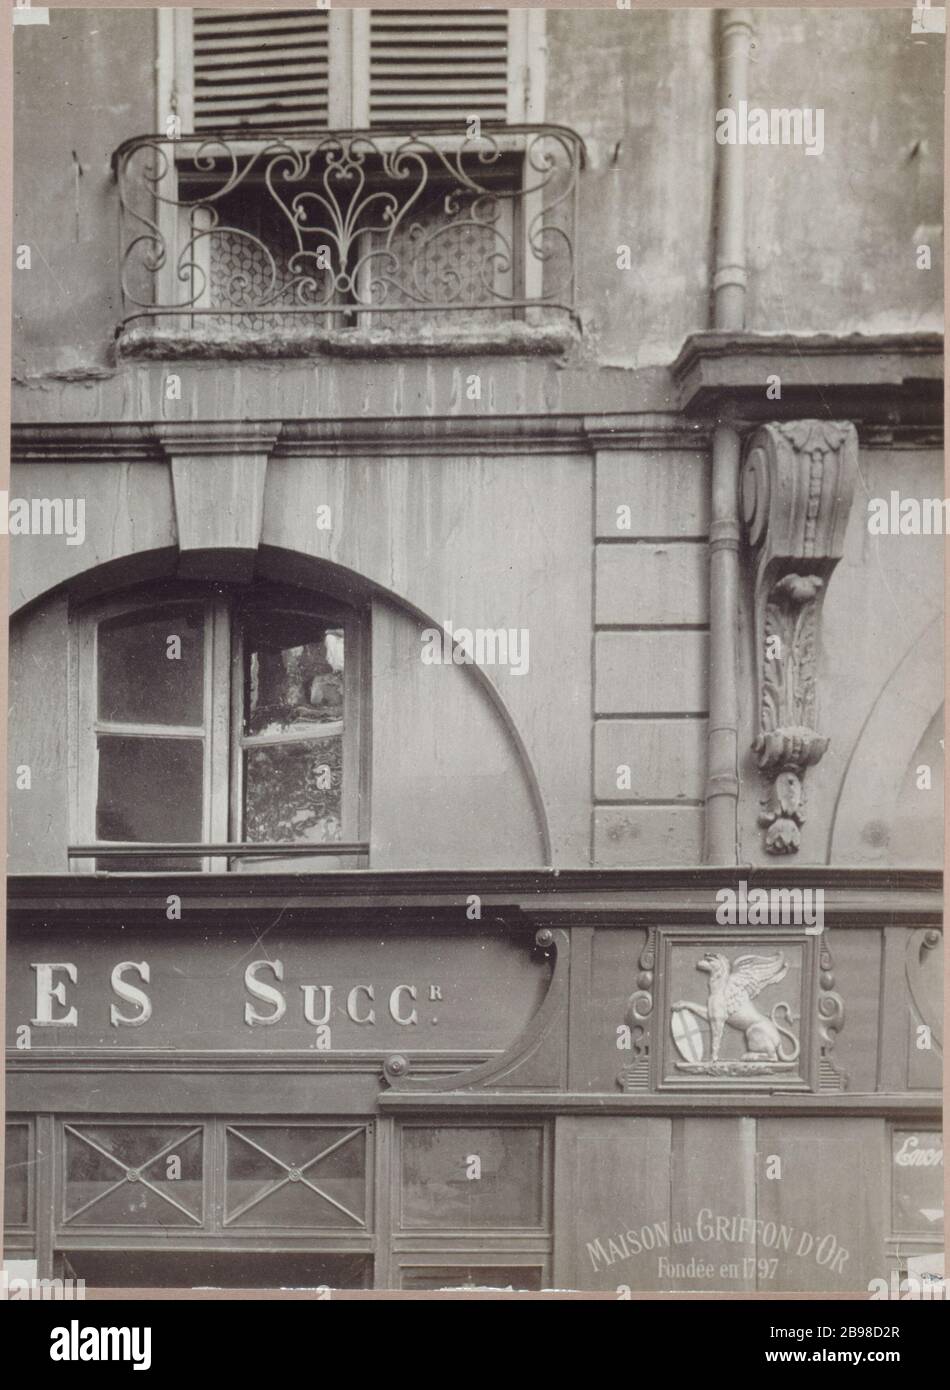 1 RUE DE CONDE - MAISON DU GRIFFON D'OR 1 rue de Condé, Maison du Griffon d'Or, queue de l'enligne. Paris (VIème arr.). Photo de Charles Lansiaux (1855-1939). Paris, musée Carnavalet. Banque D'Images